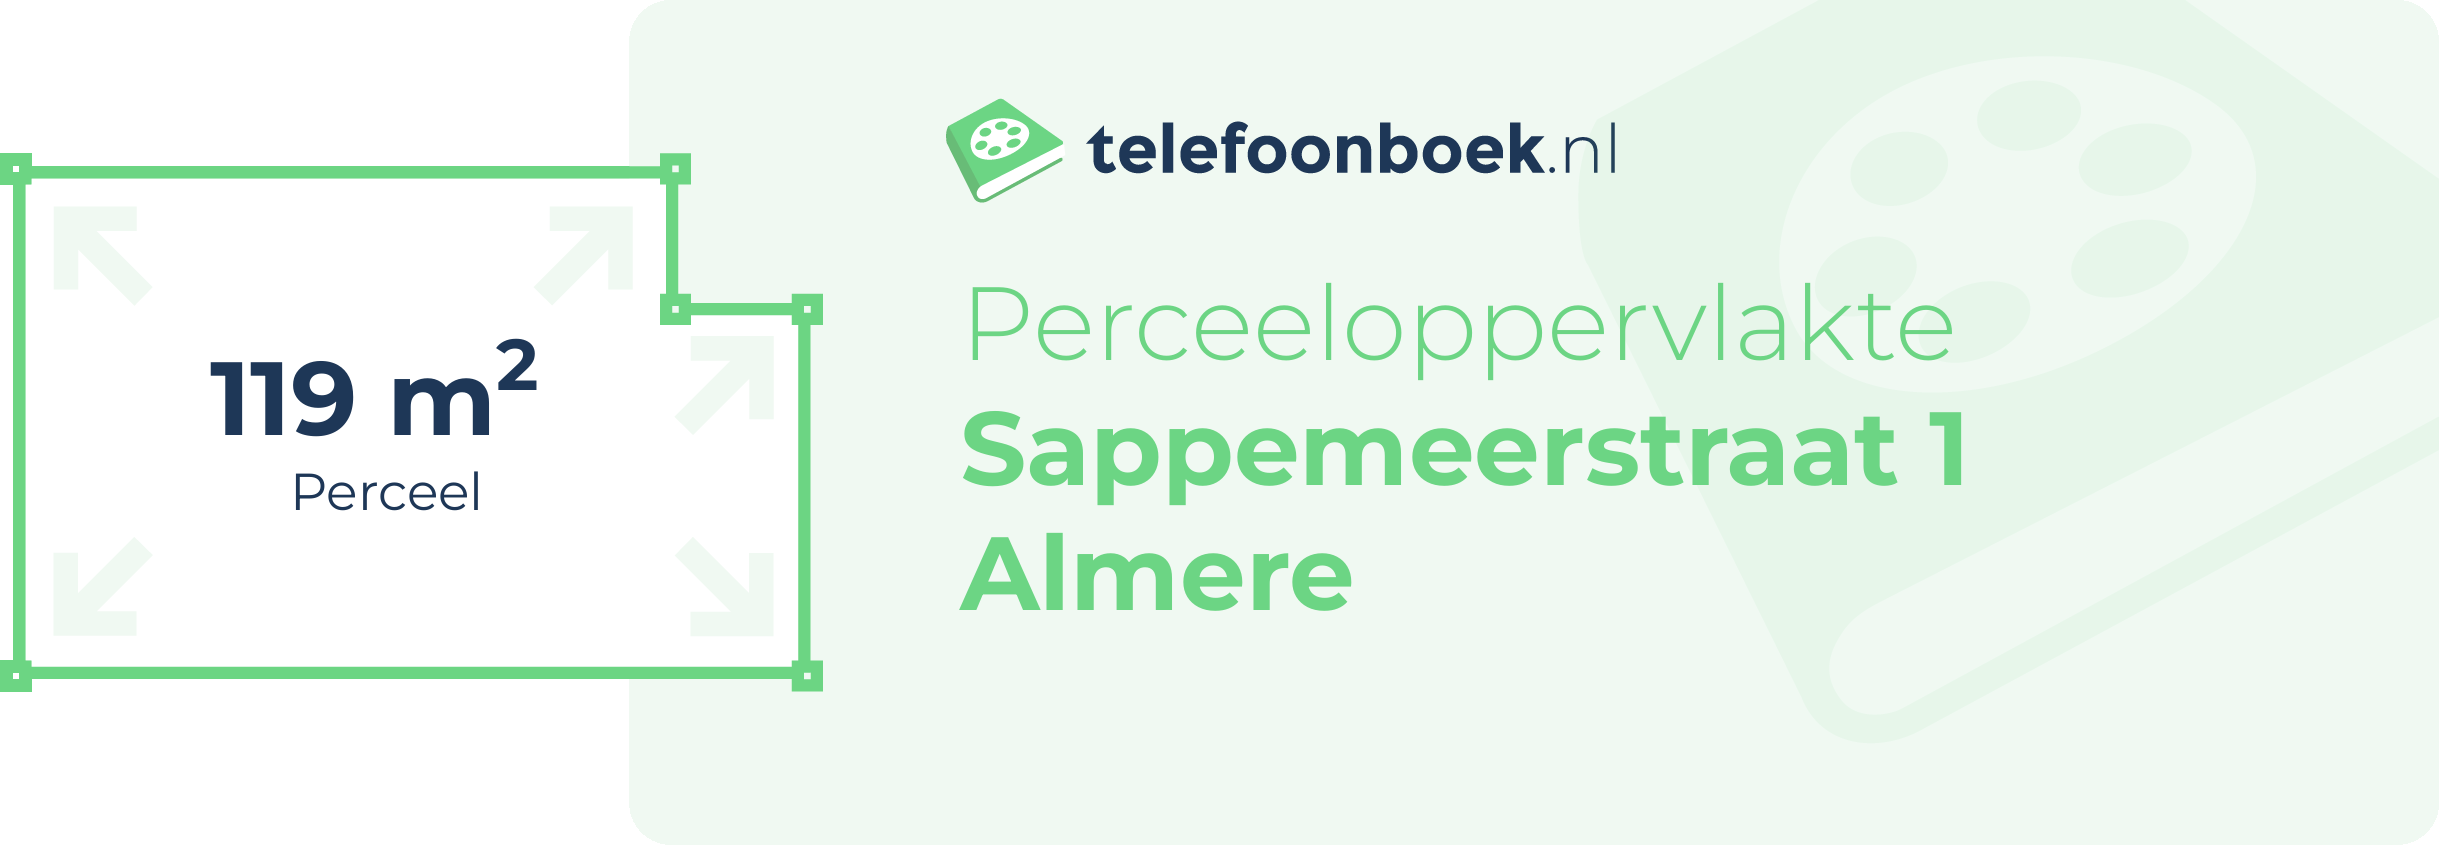 Perceeloppervlakte Sappemeerstraat 1 Almere